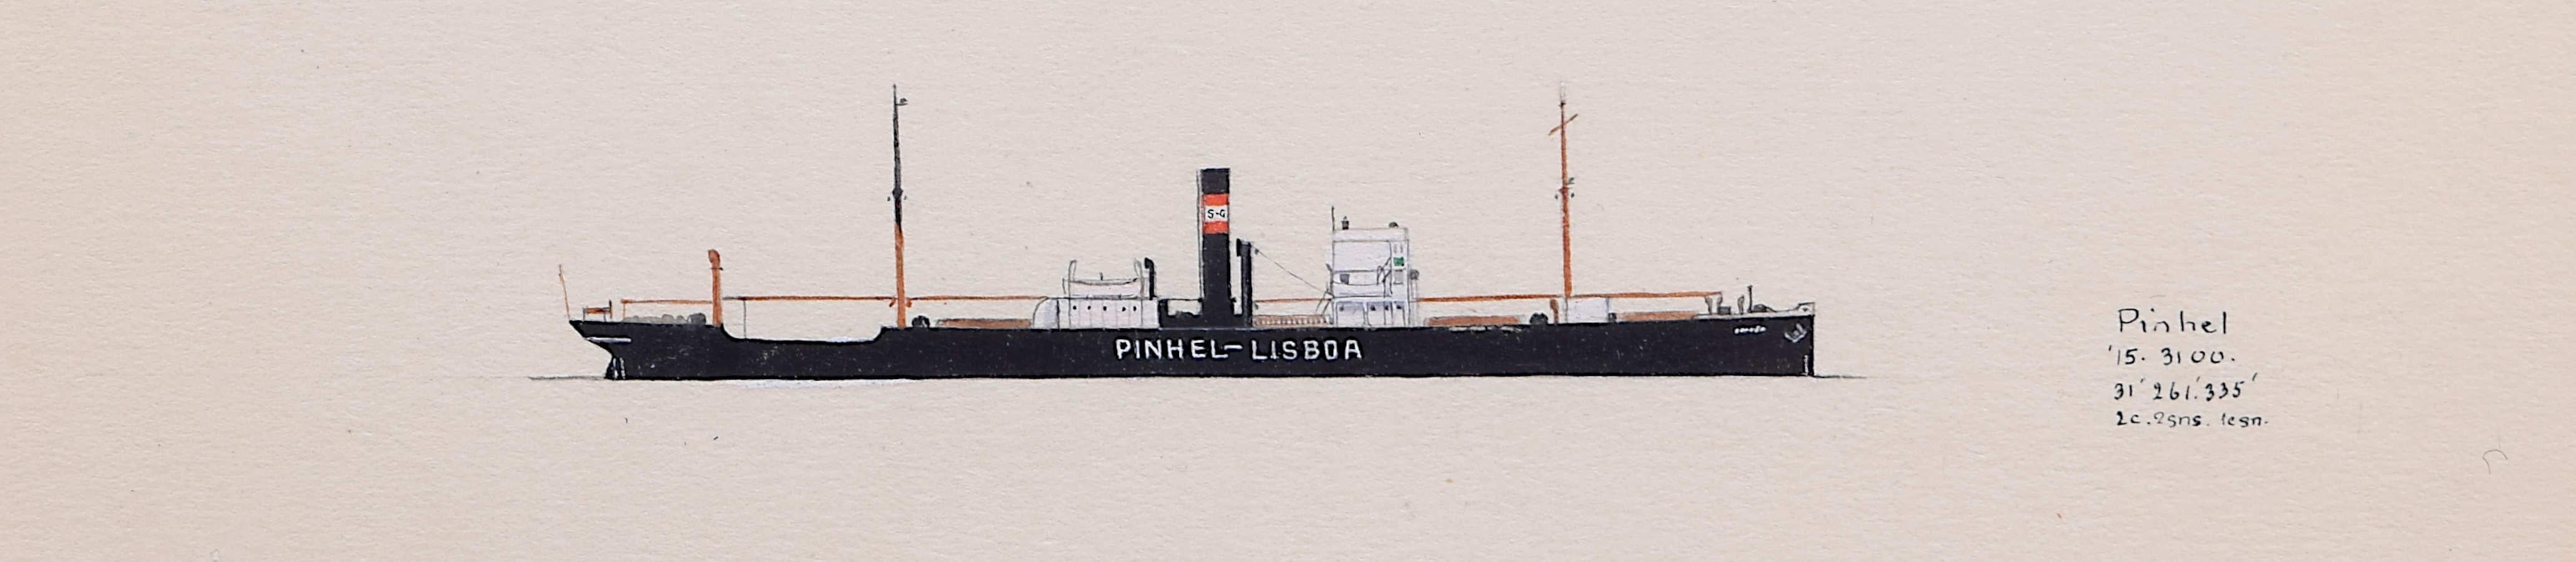 Laurence Dunn, SS Pinhel Lisboa (c.1927) Merchantman Tramp Steamer watercolour